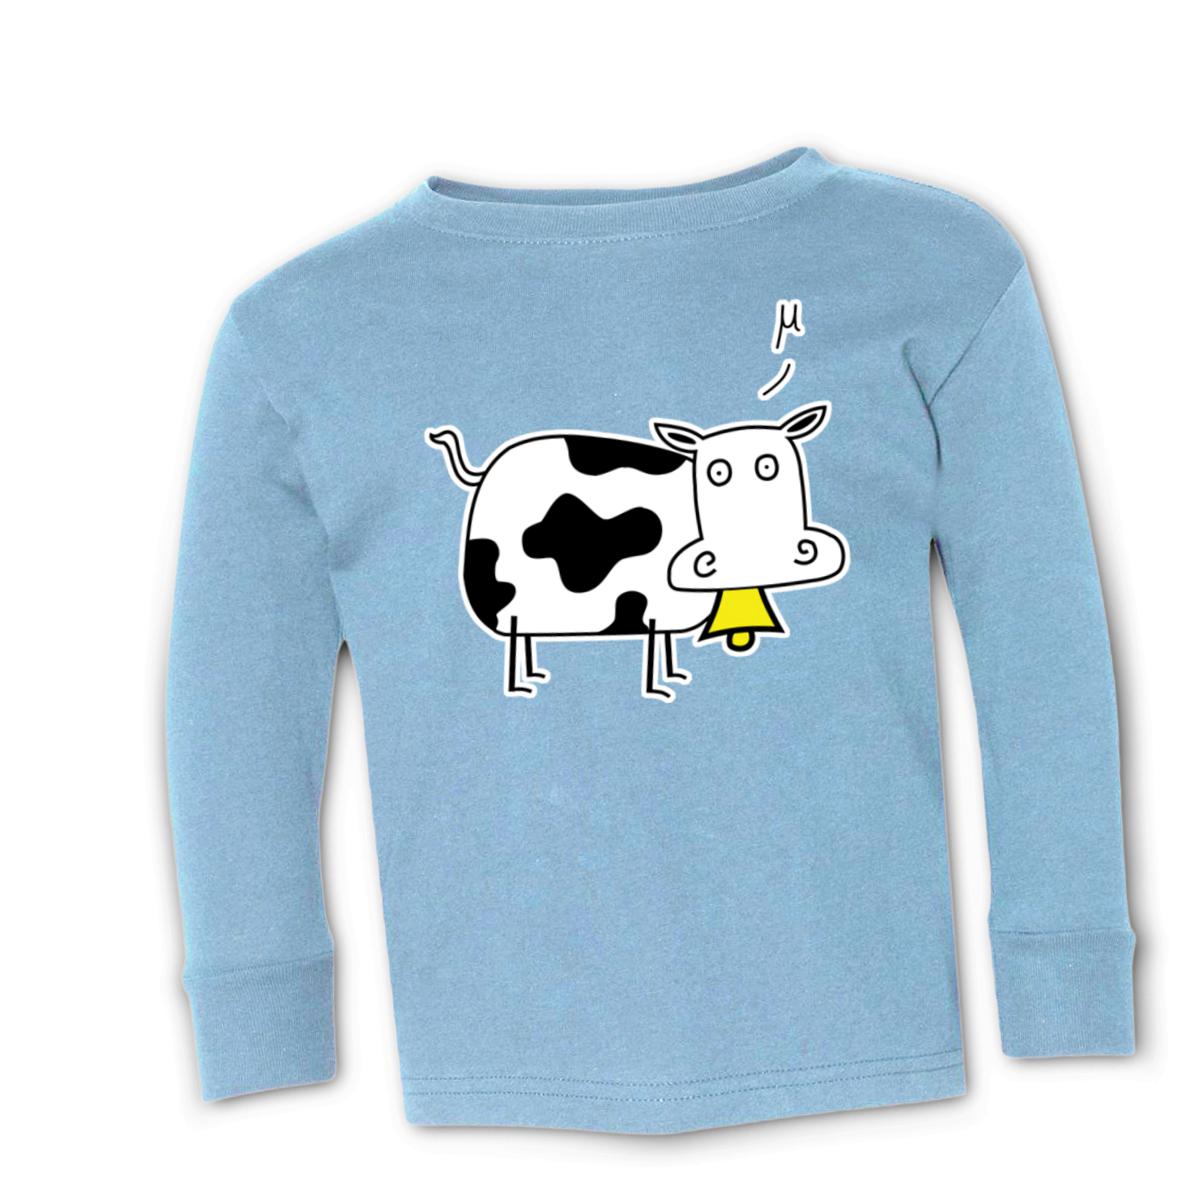 Mu Cow Toddler Long Sleeve Tee 4T light-blue